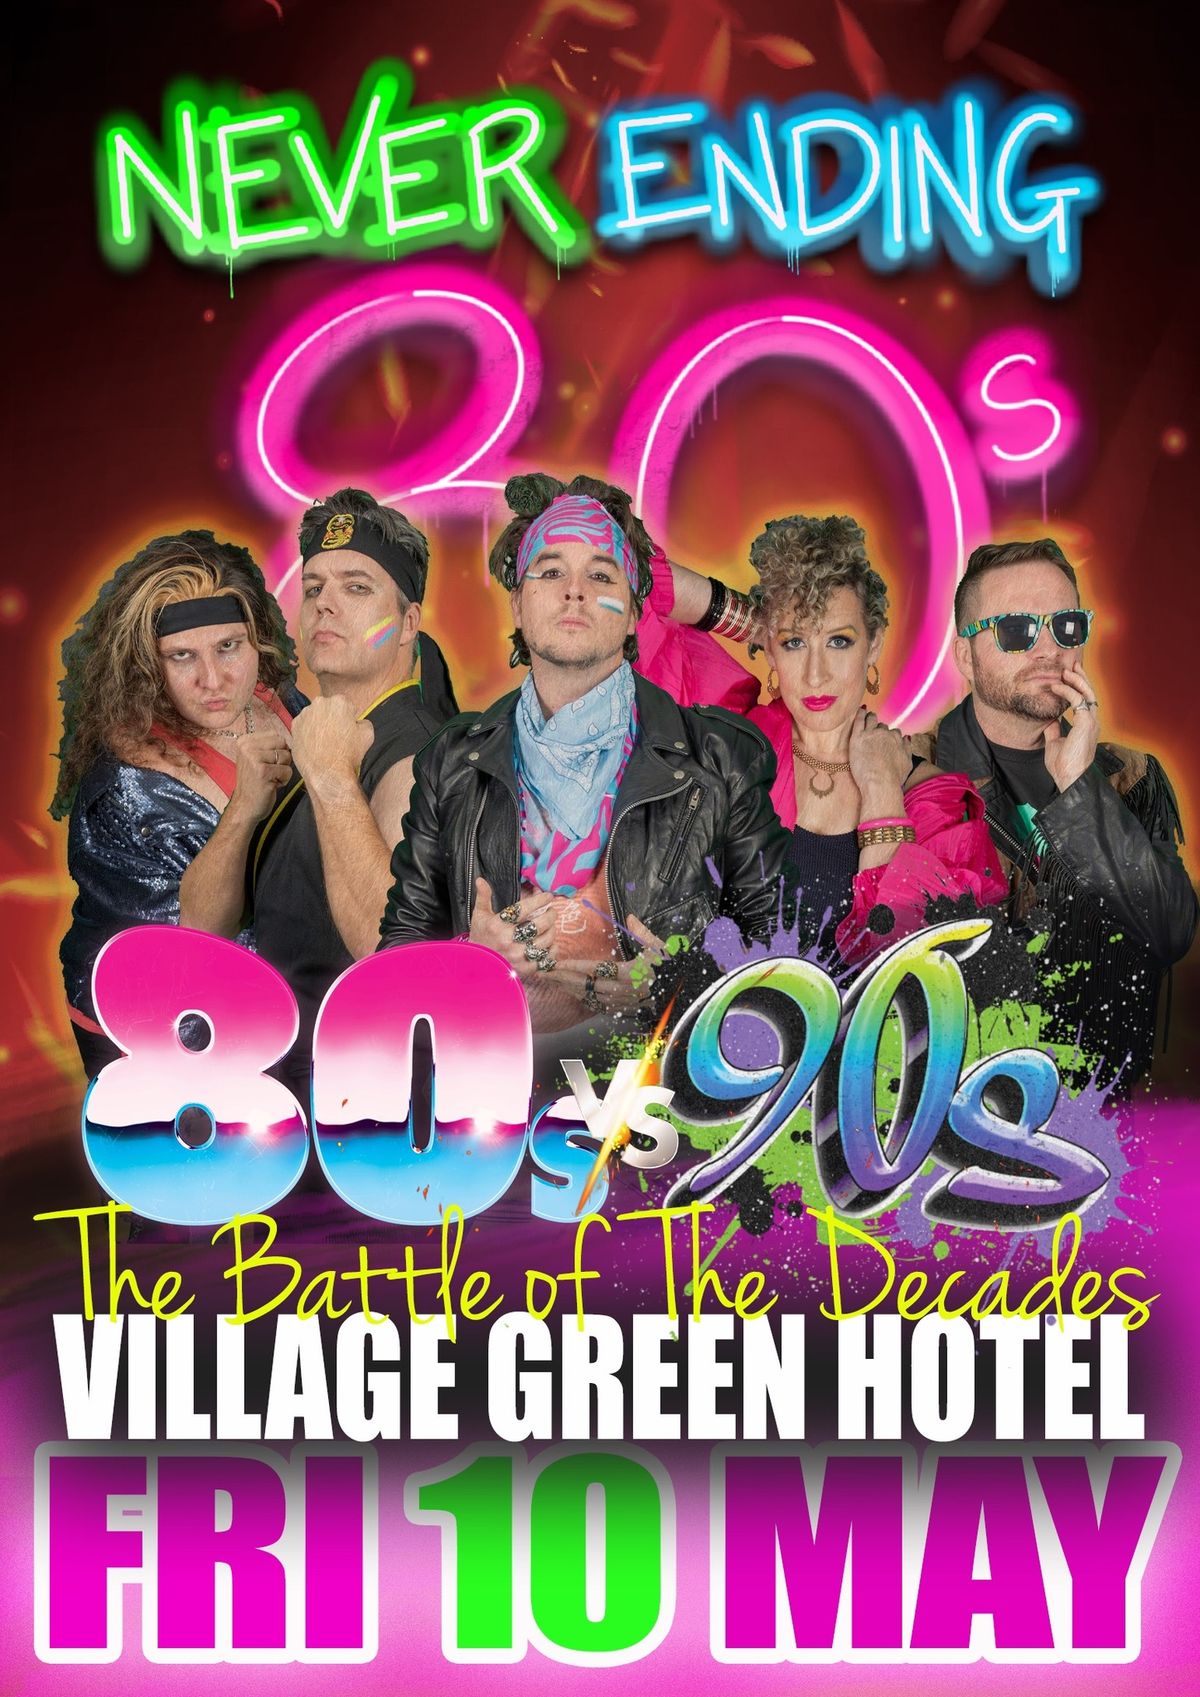 NEVER ENDING 80s v 90s - Village Green Melbourne 